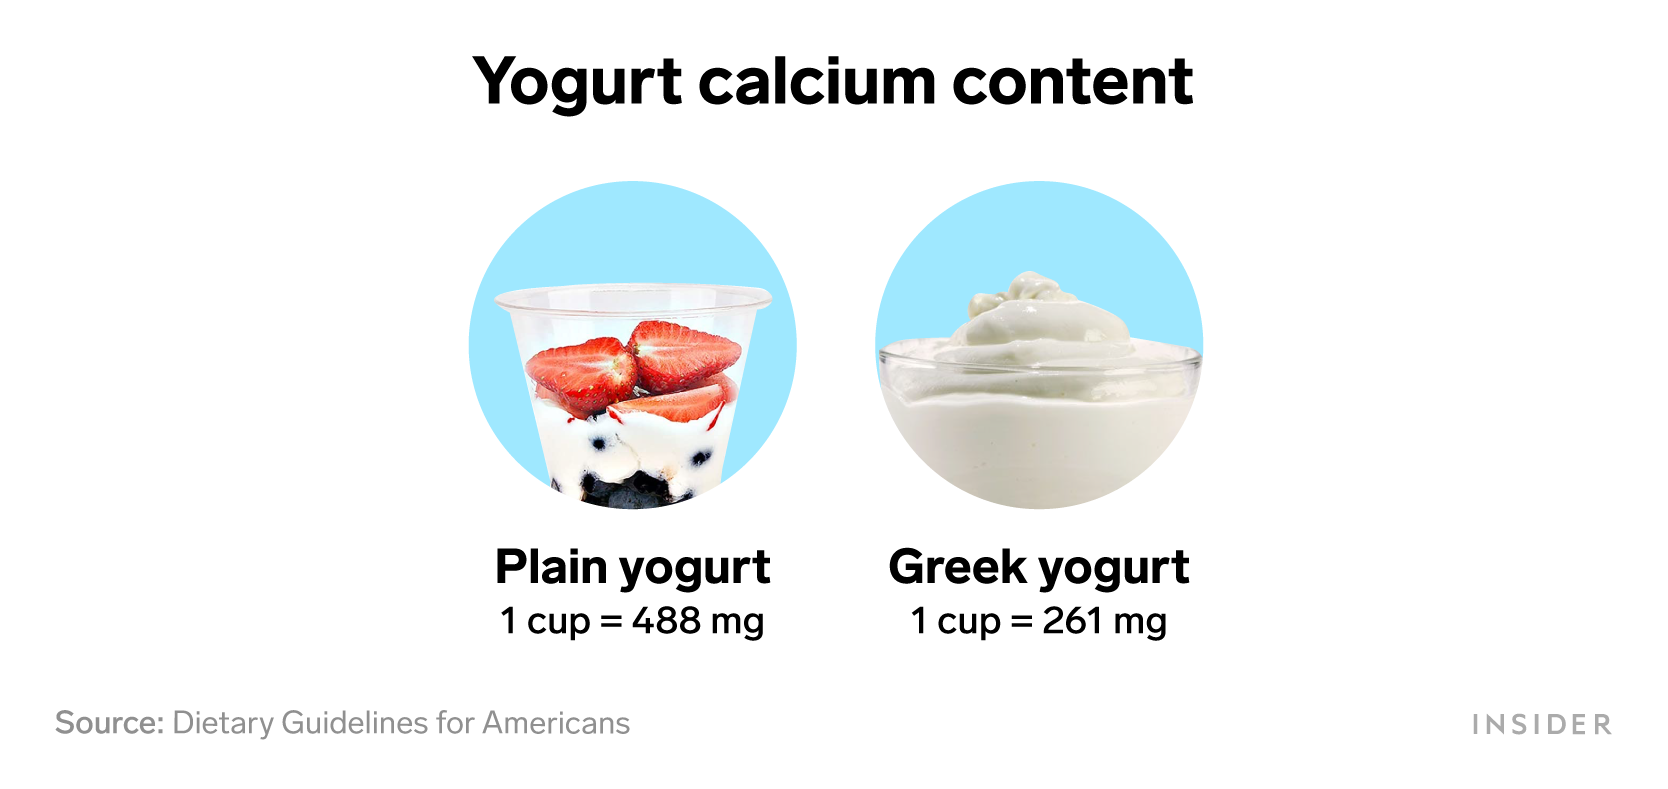 Foods that are rich in calcium: Yogurt calcium content